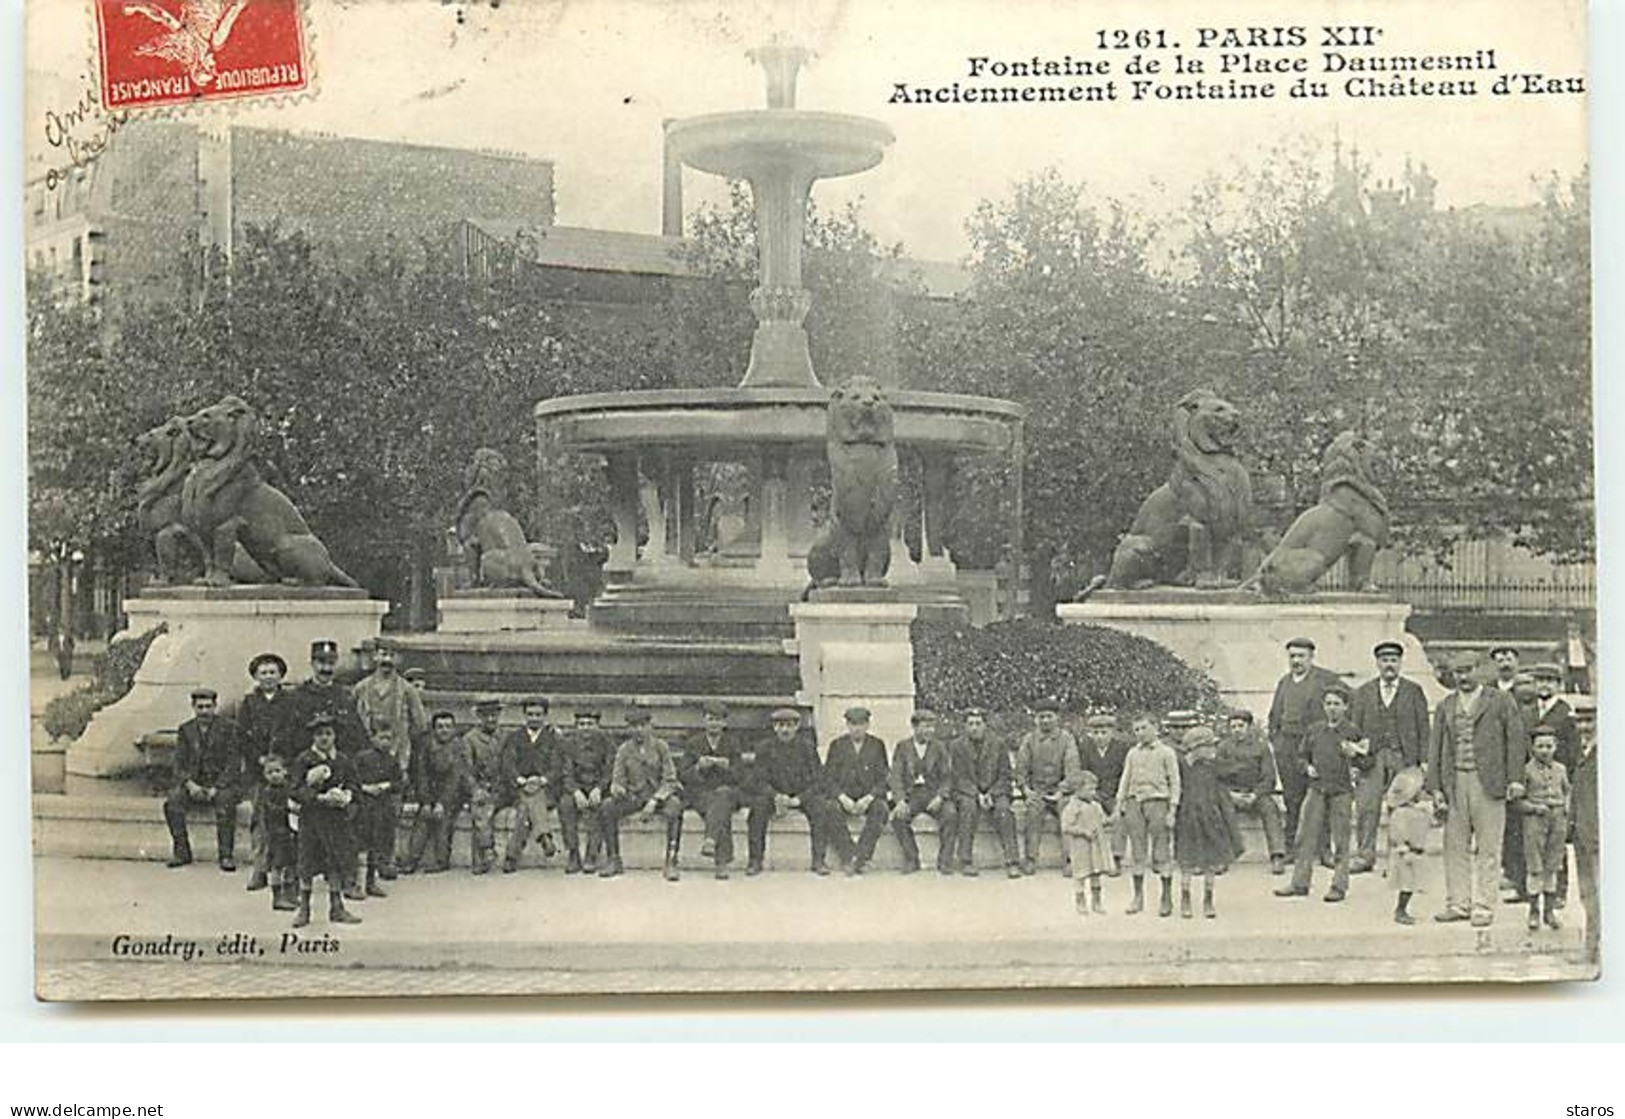 PARIS XII - Fontaine De La Place Daumesnil Anciennement Fontaine Du Château D'Eau - Gondry N°1261 - Paris (12)